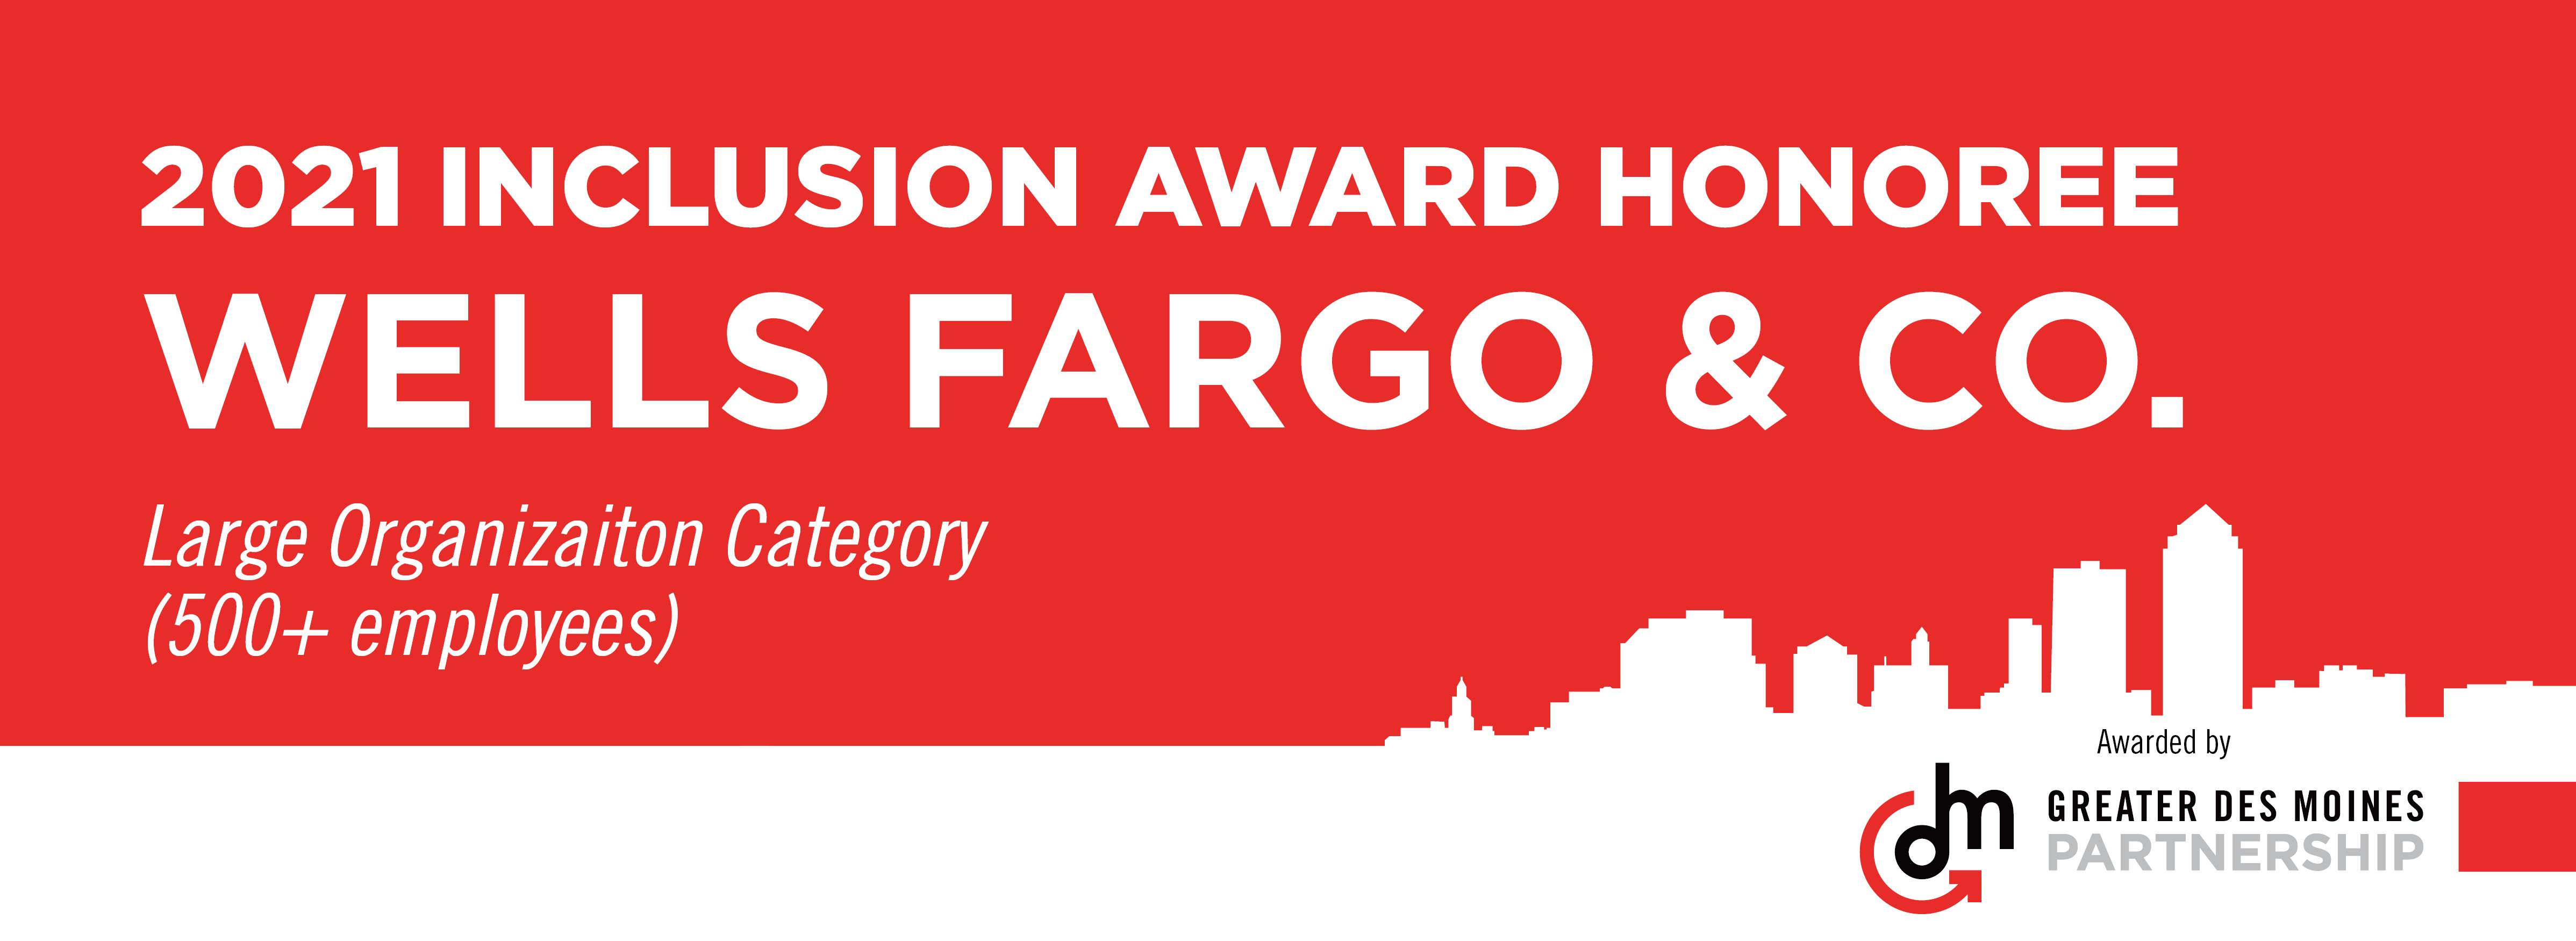 Wells Fargo Inclusion Award